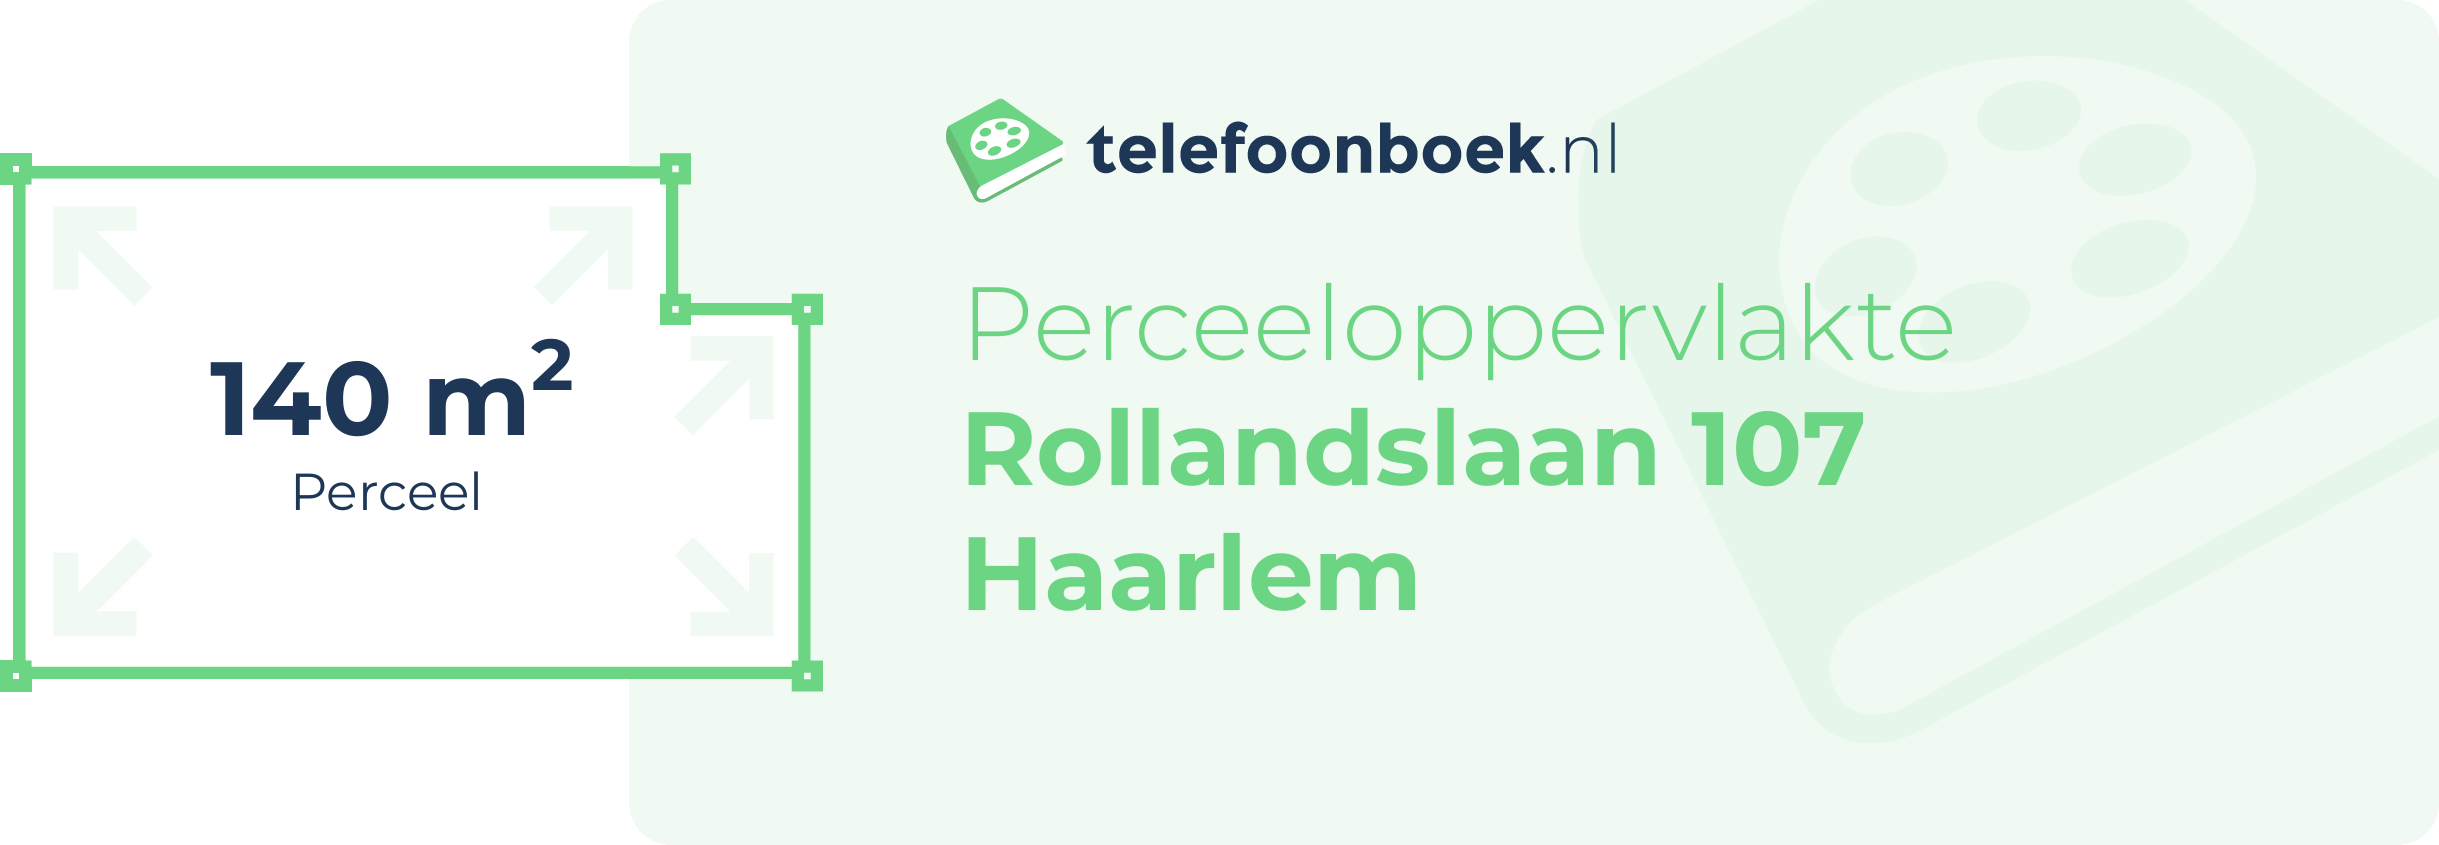 Perceeloppervlakte Rollandslaan 107 Haarlem